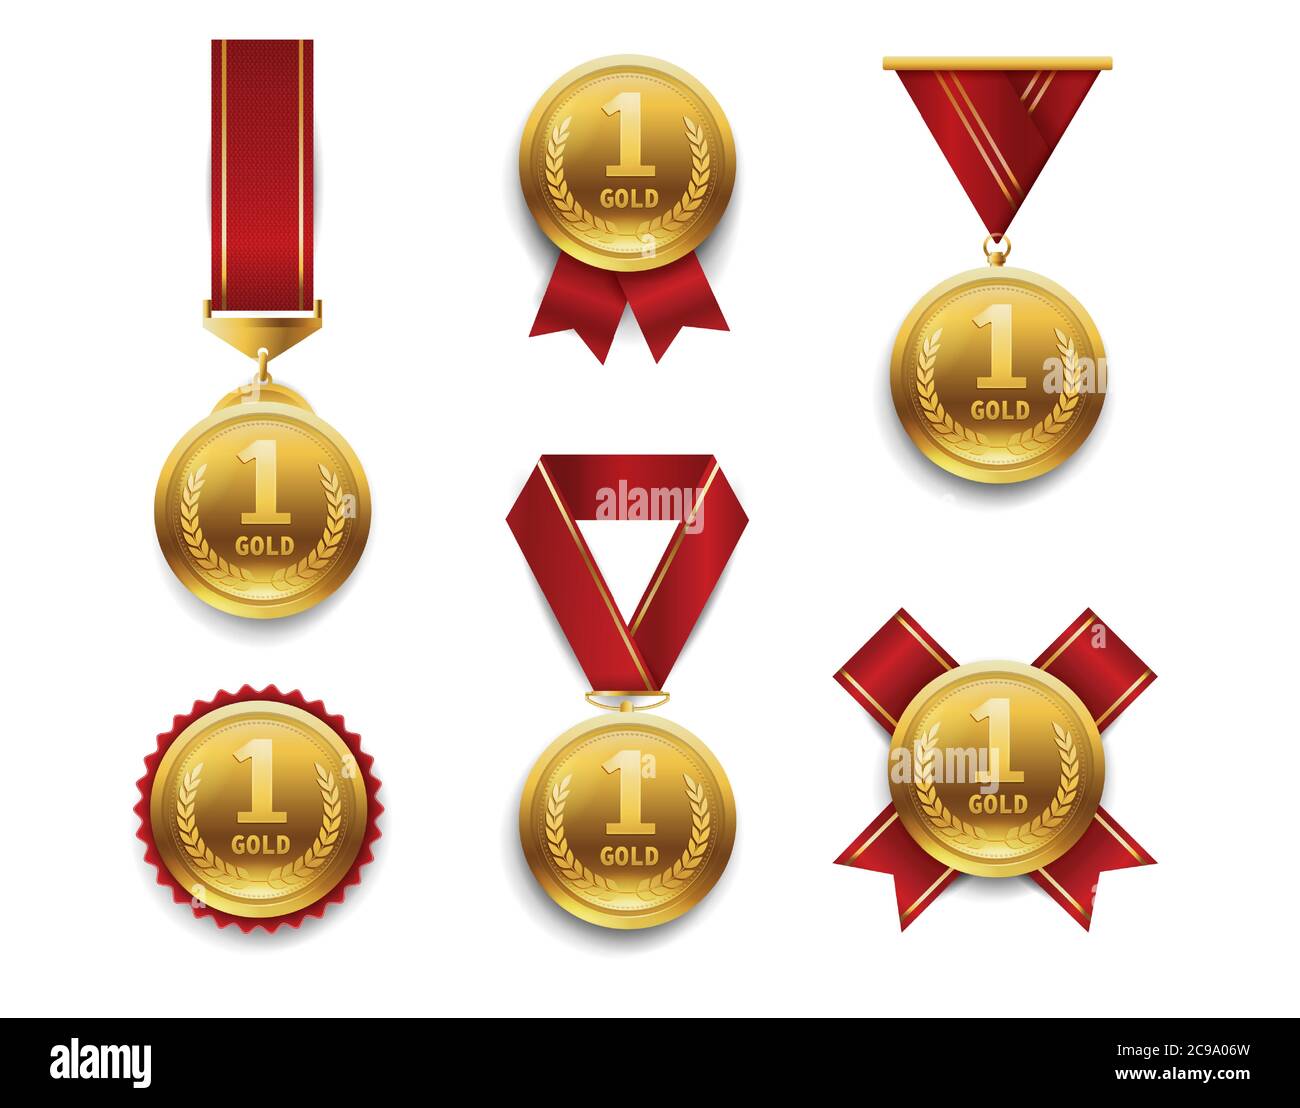 Médaille d'or du mérite personnalisée en métal doré récompense sportive